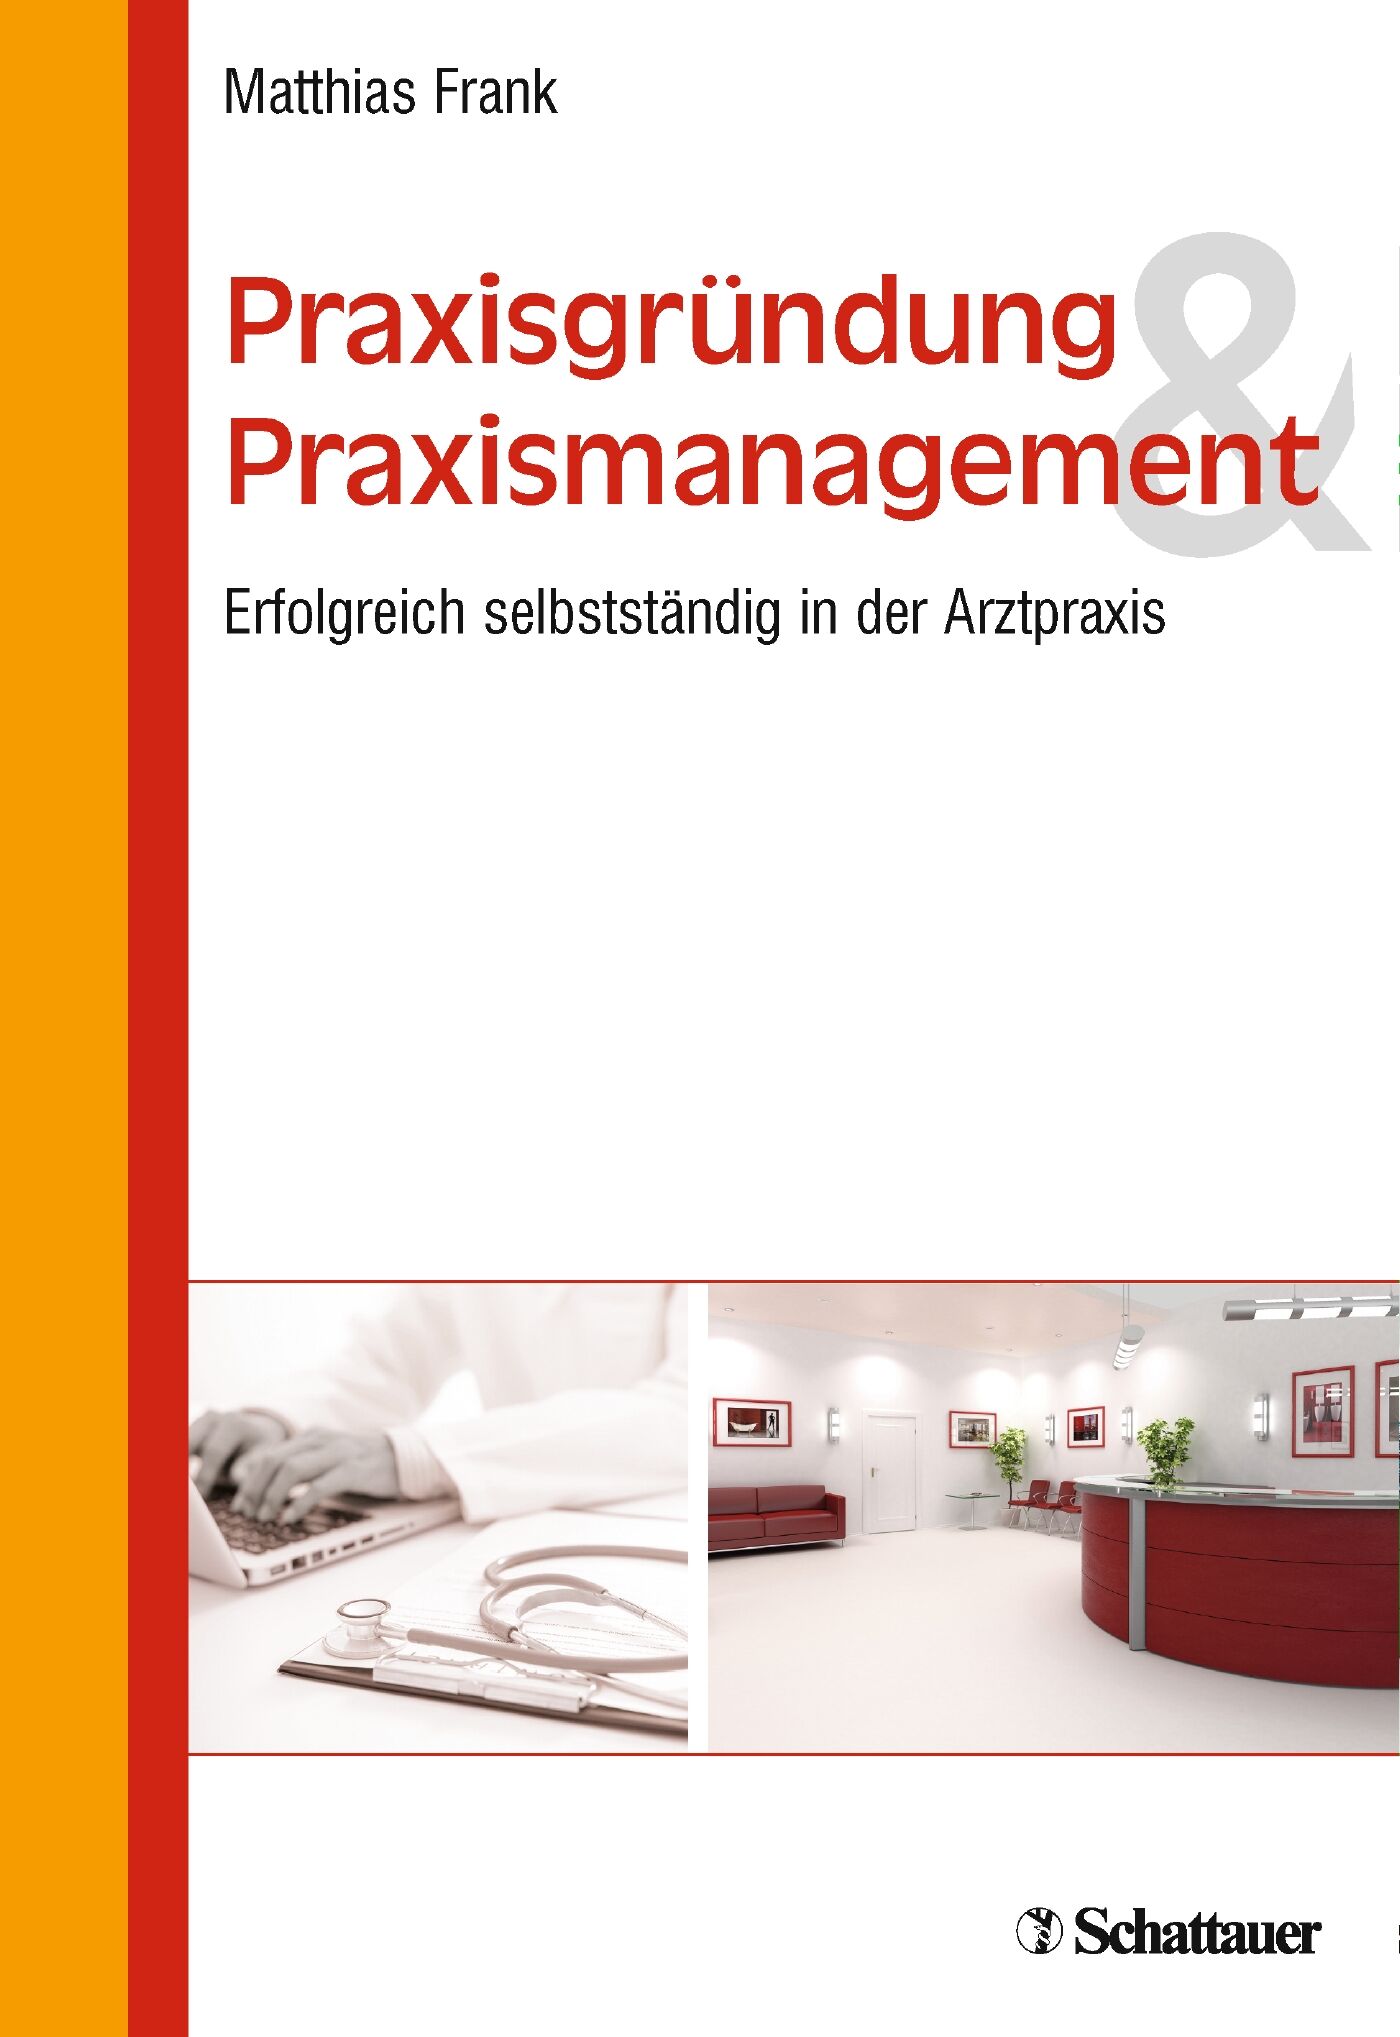 Praxisgründung und Praxismanagement, 9783794530755